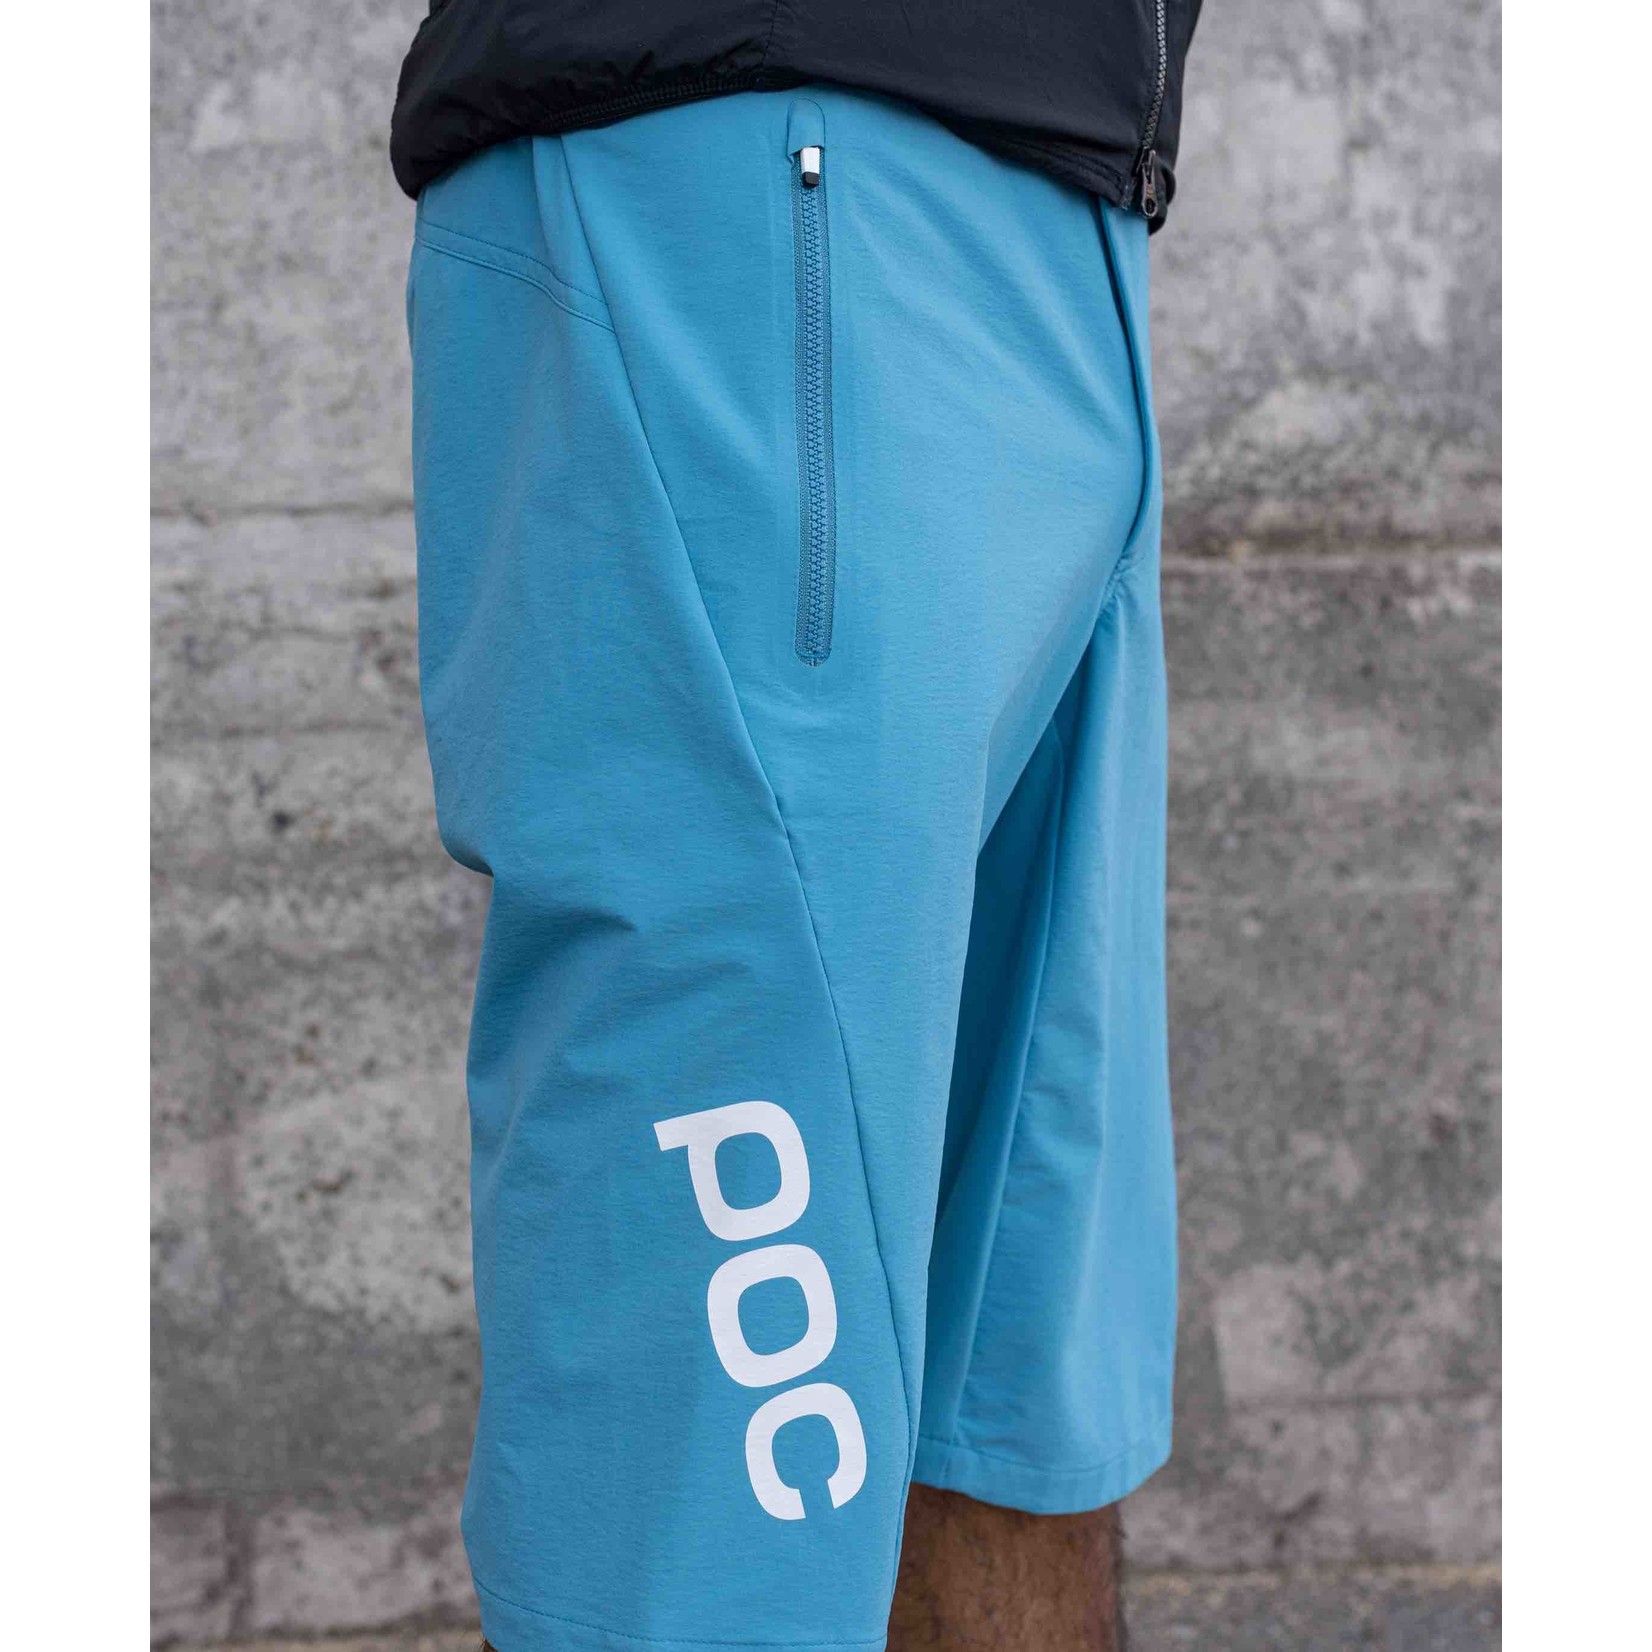 Essential Enduro Shorts POC